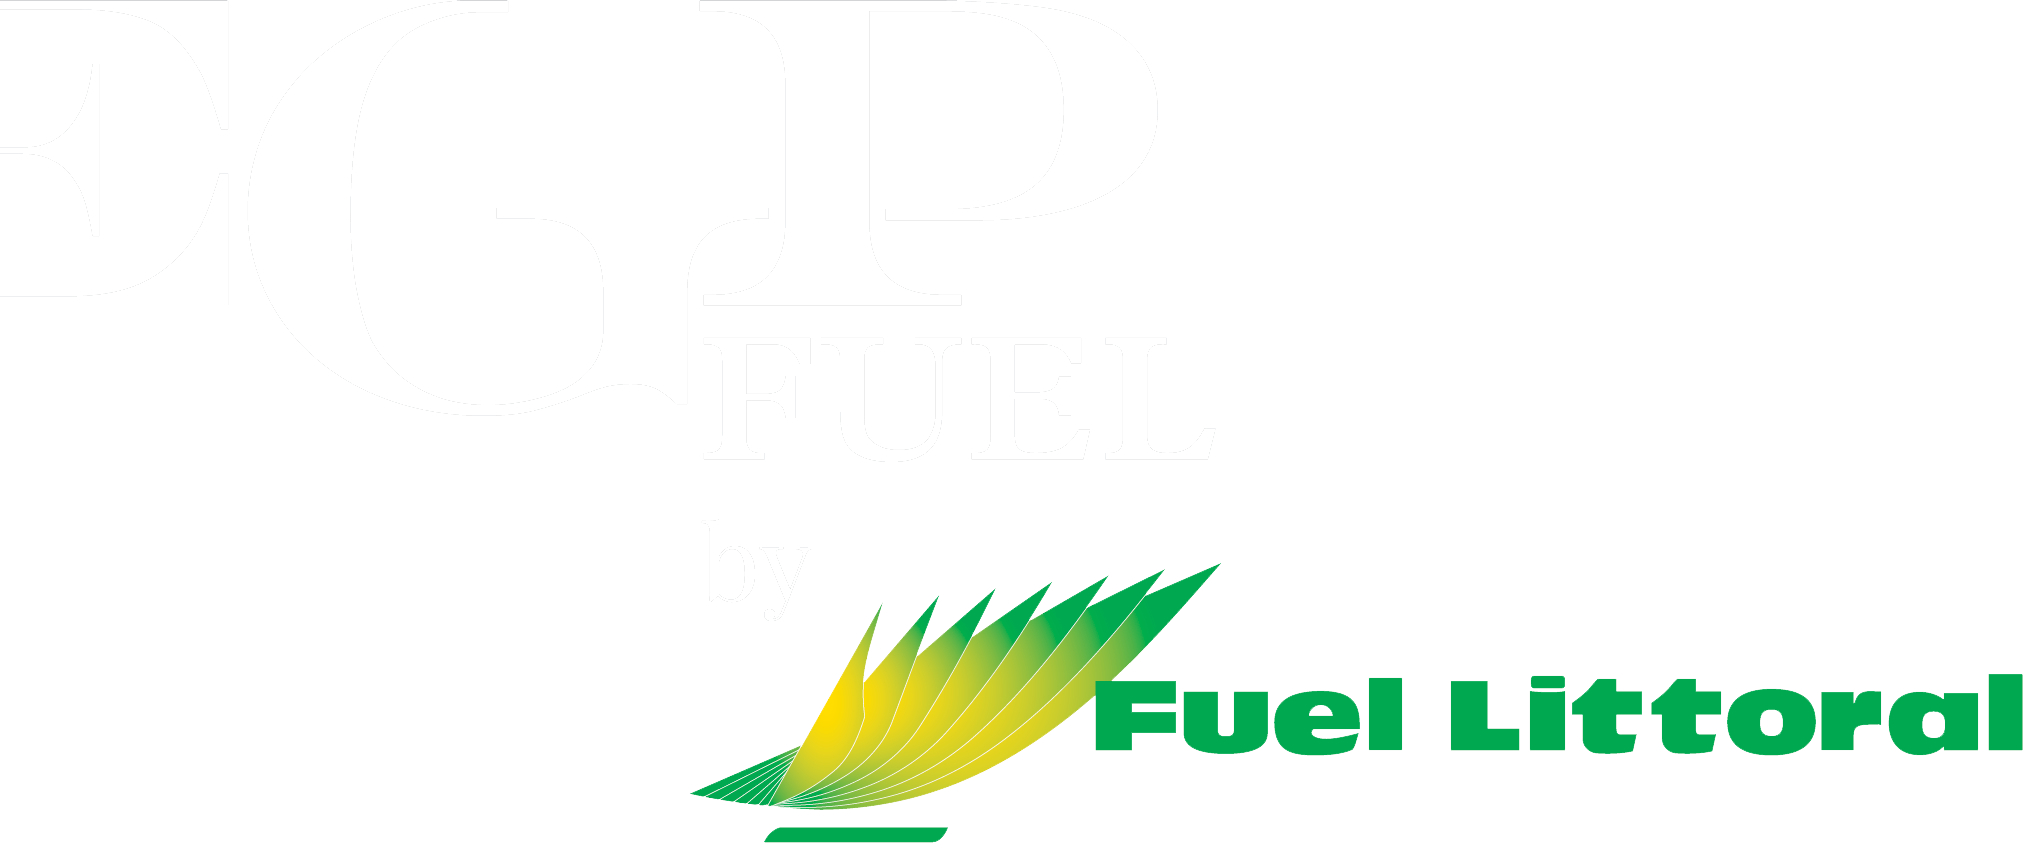 EGP Fuel